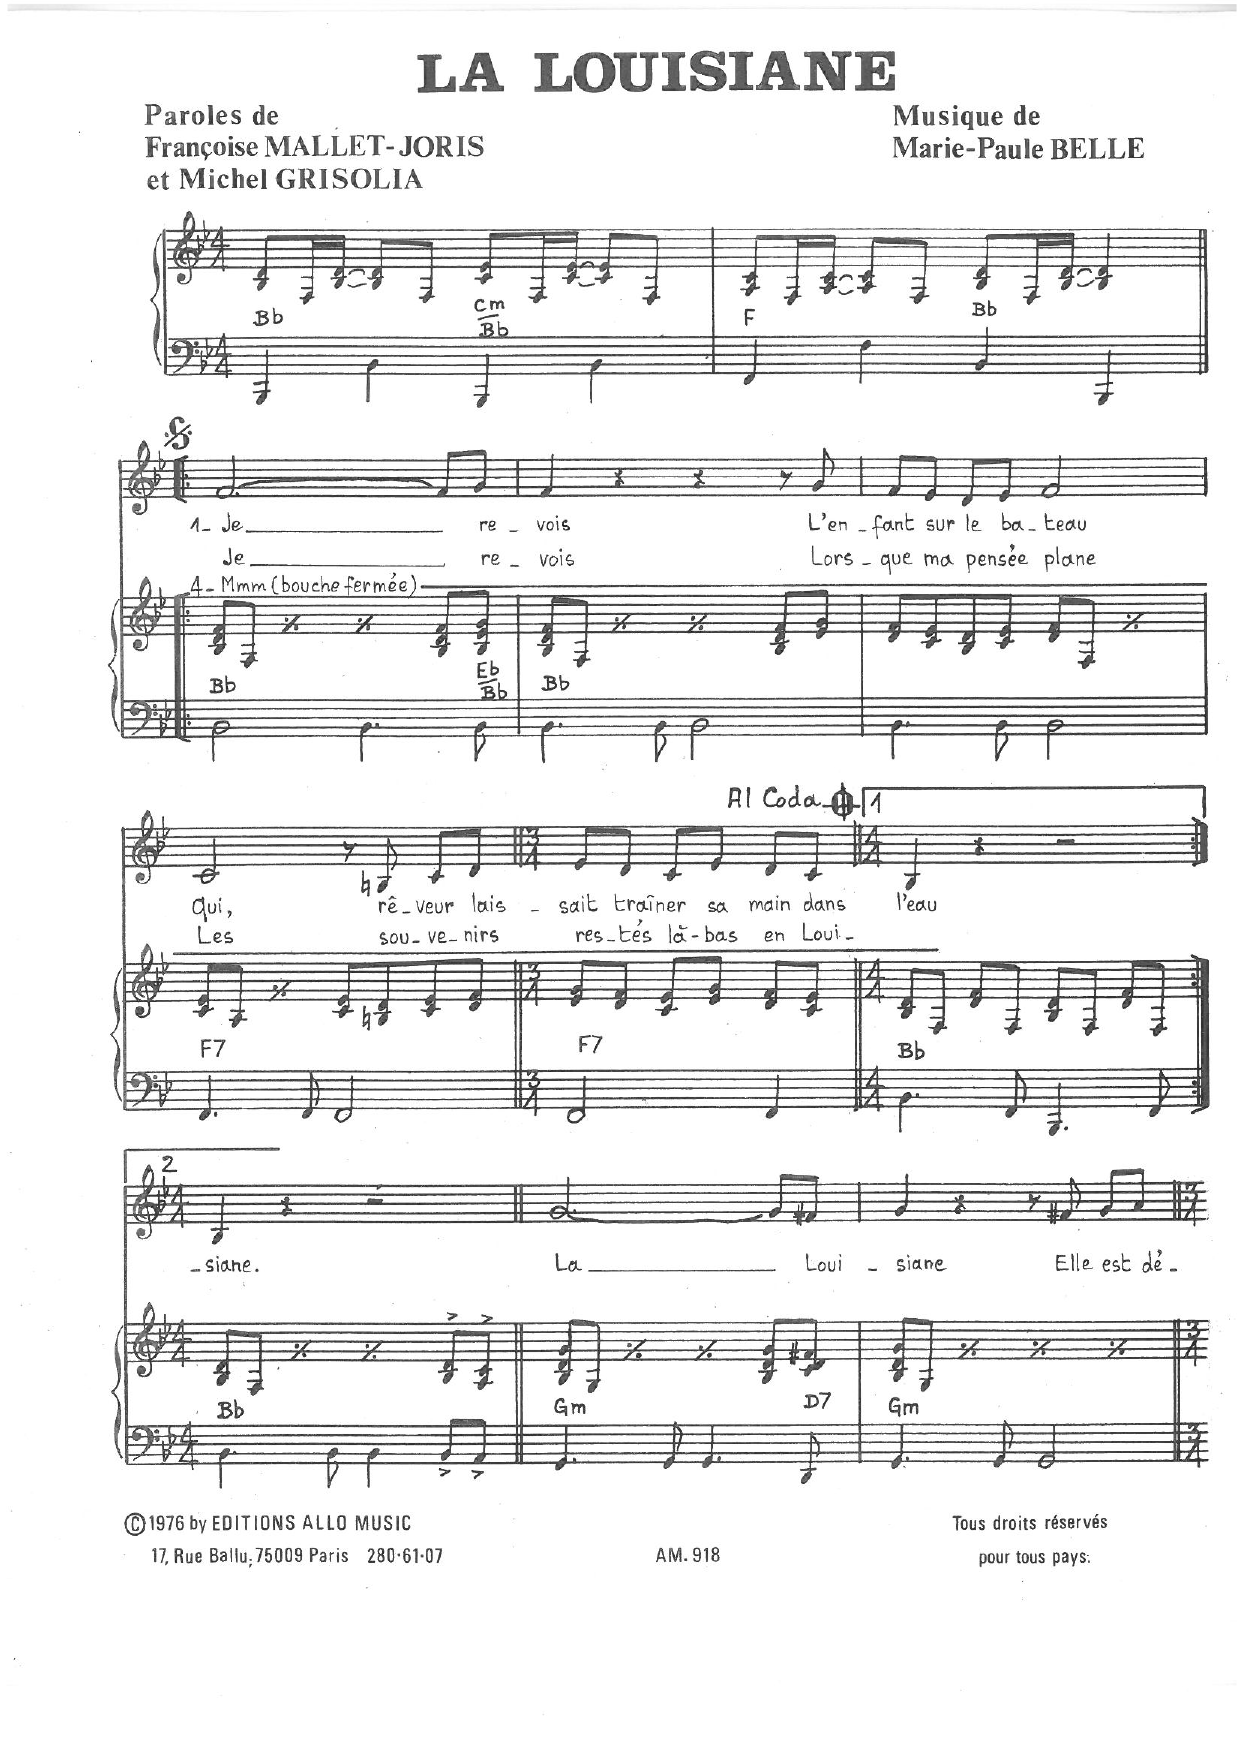 Michel Grisolia, Françoise Mallet-Joris and Marie Paule Belle La Louisiane Sheet Music Notes & Chords for Piano & Vocal - Download or Print PDF